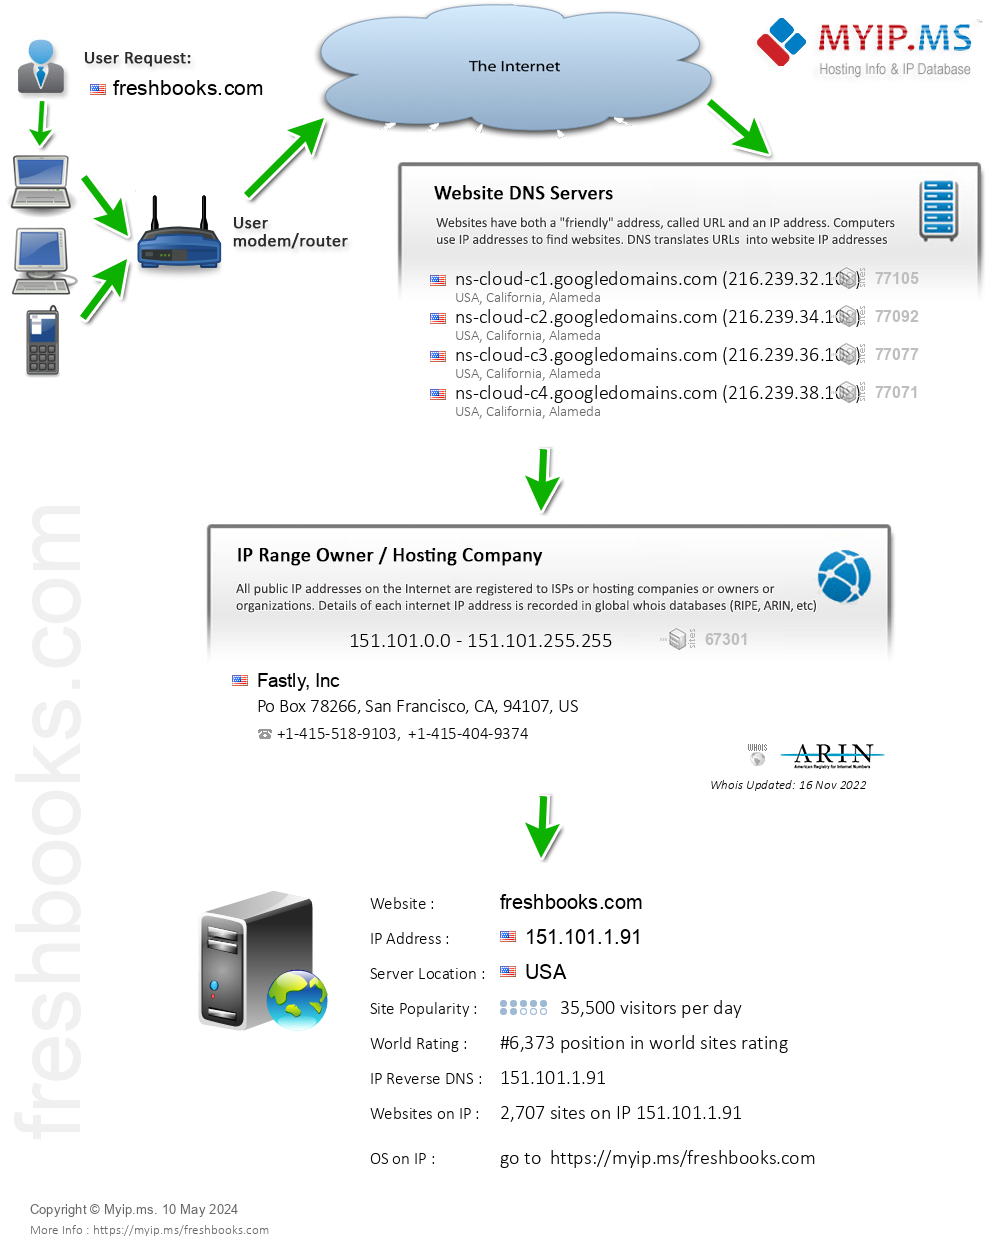 Freshbooks.com - Website Hosting Visual IP Diagram